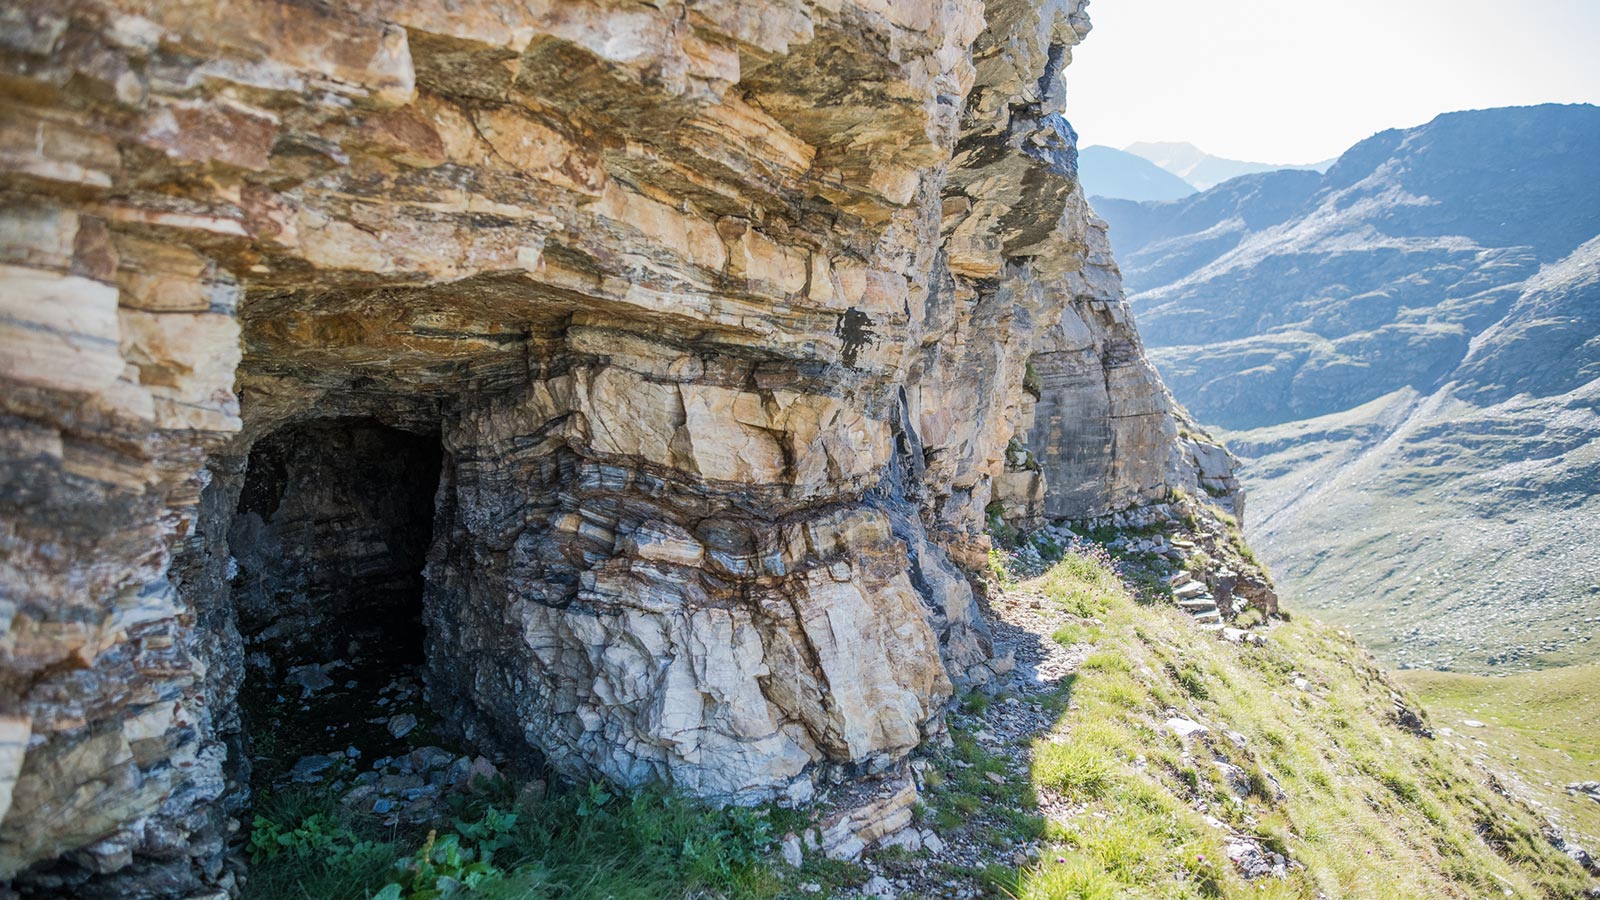 Dettaglio di una delle grotte nei pressi del Sunny Valley Mountain Lodge